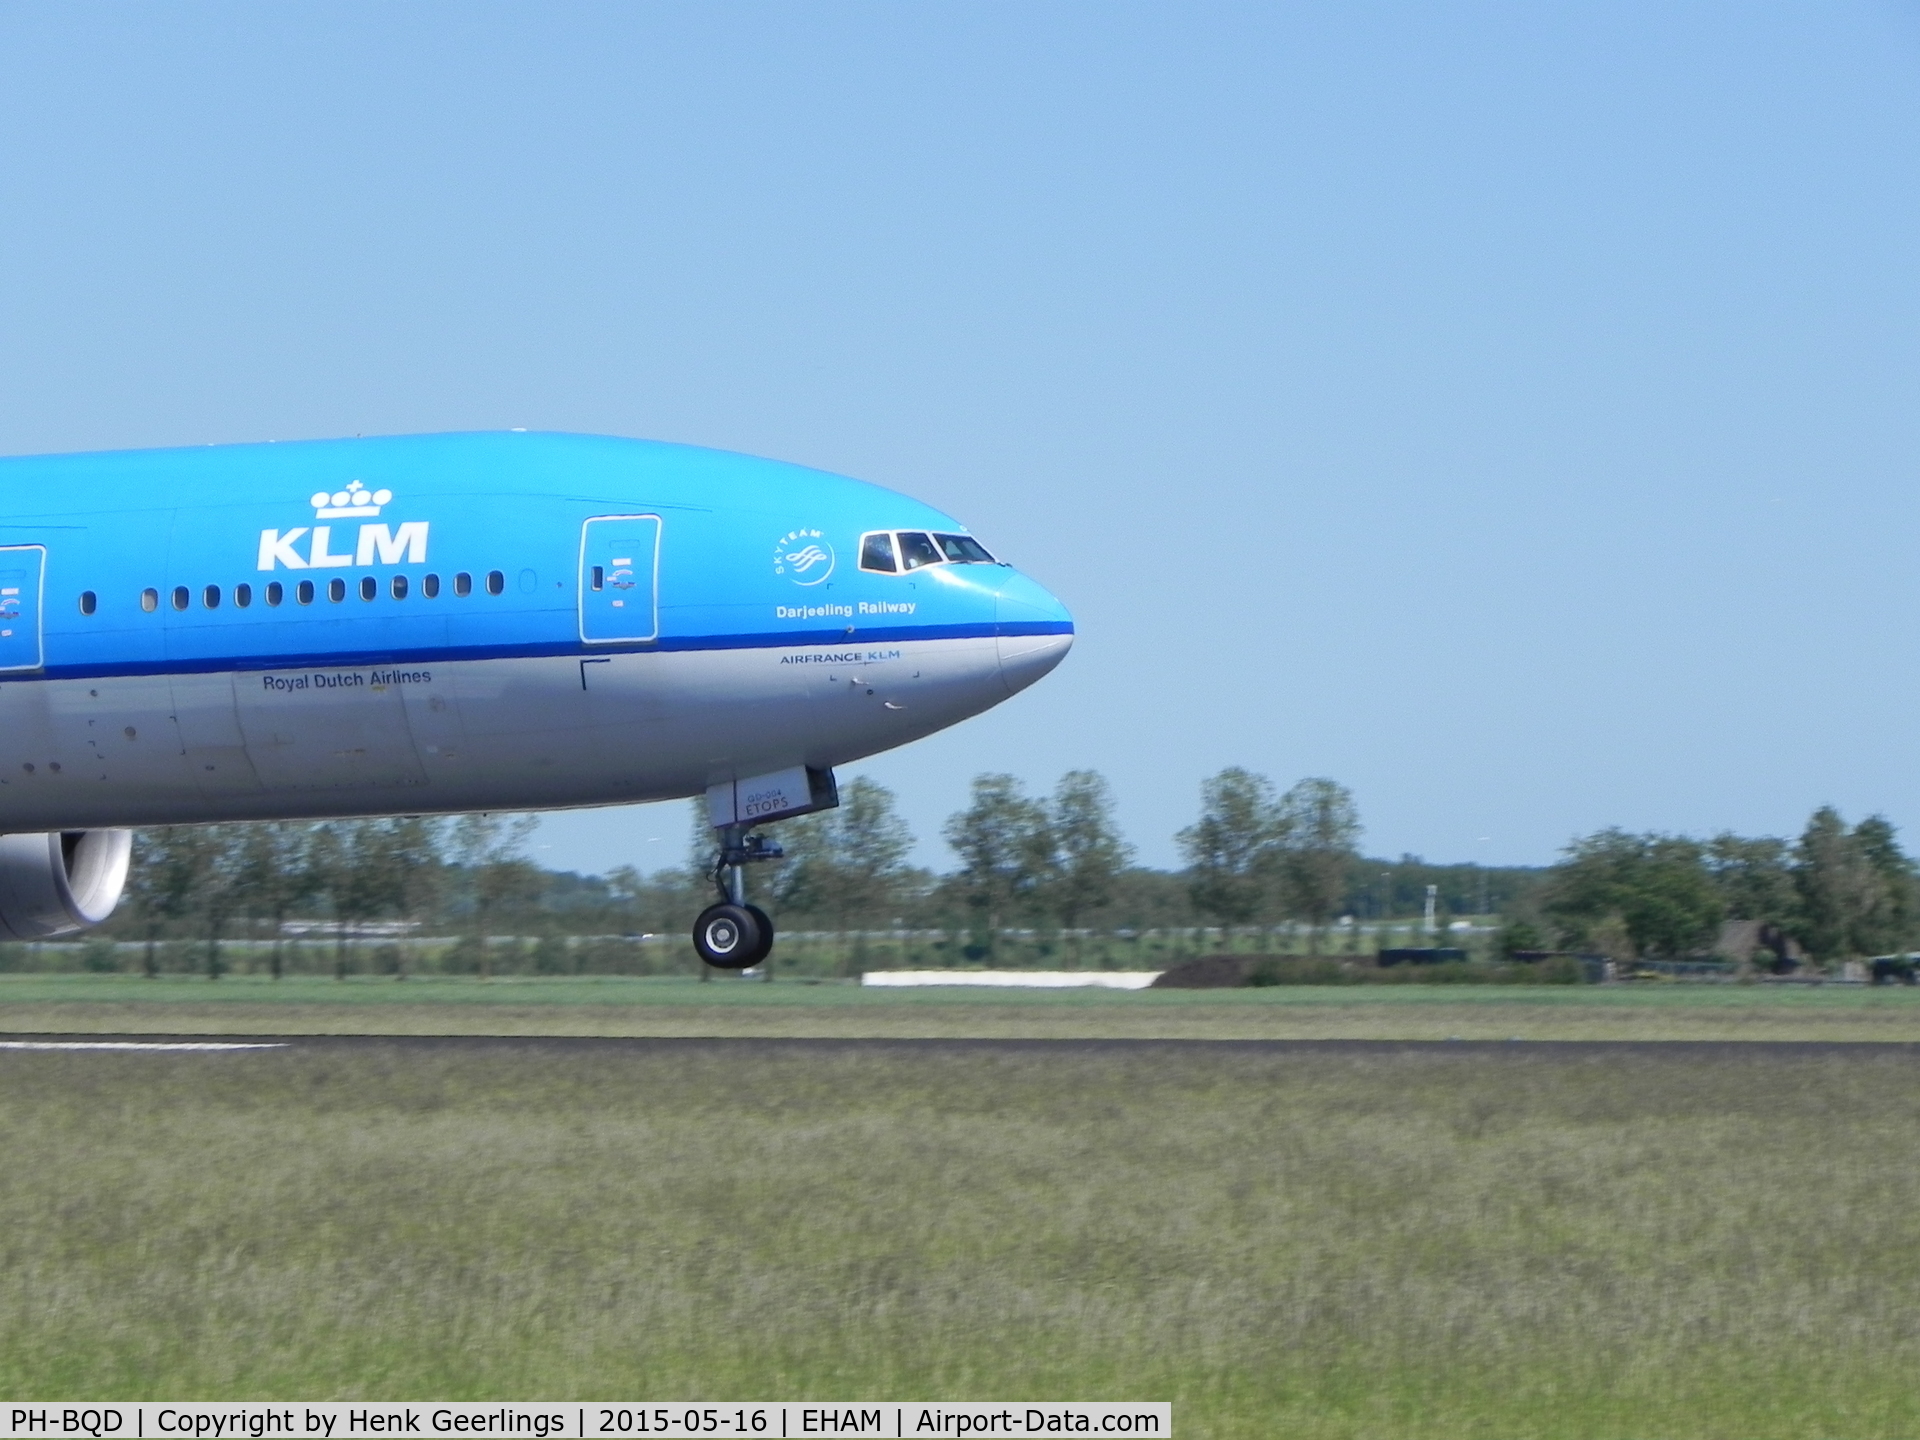 PH-BQD, 2003 Boeing 777-206/ER C/N 33713, KLM, landing